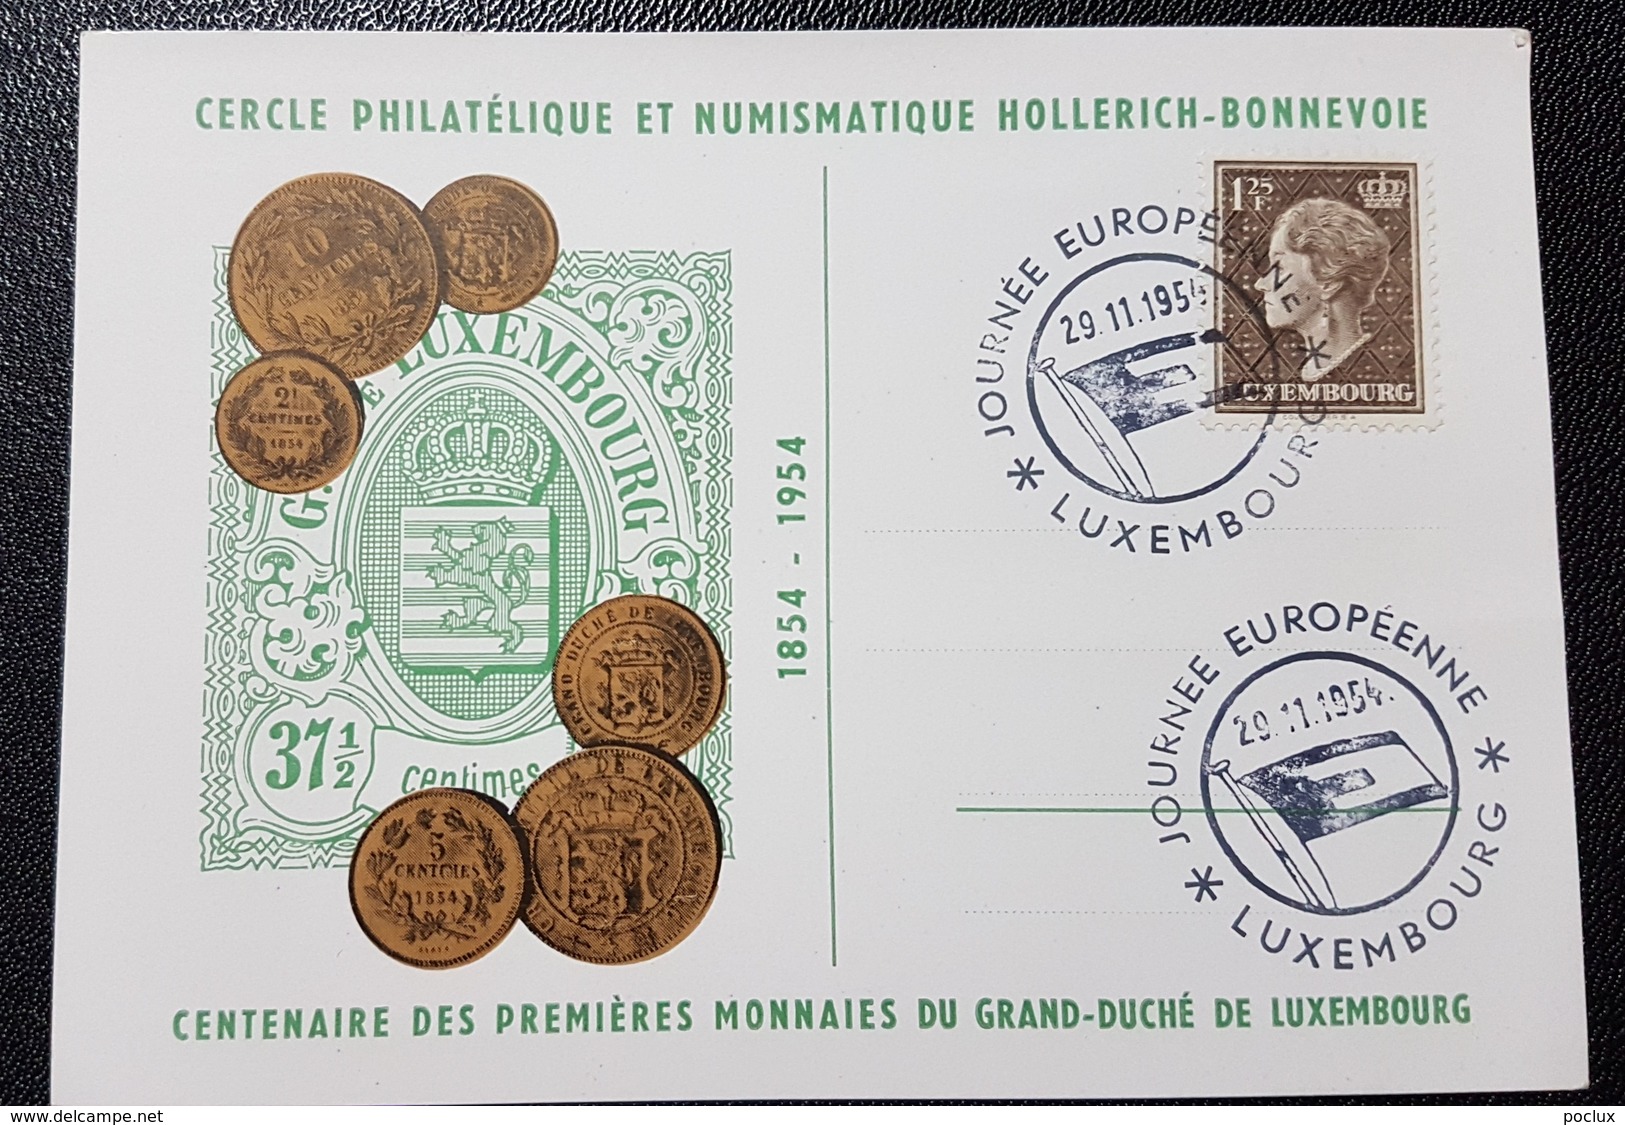 Luxembourg 1954- Journée Européenne Du Timbre 1954- Centenaire De Nos Premières Monnaies Nationales - Commemoration Cards